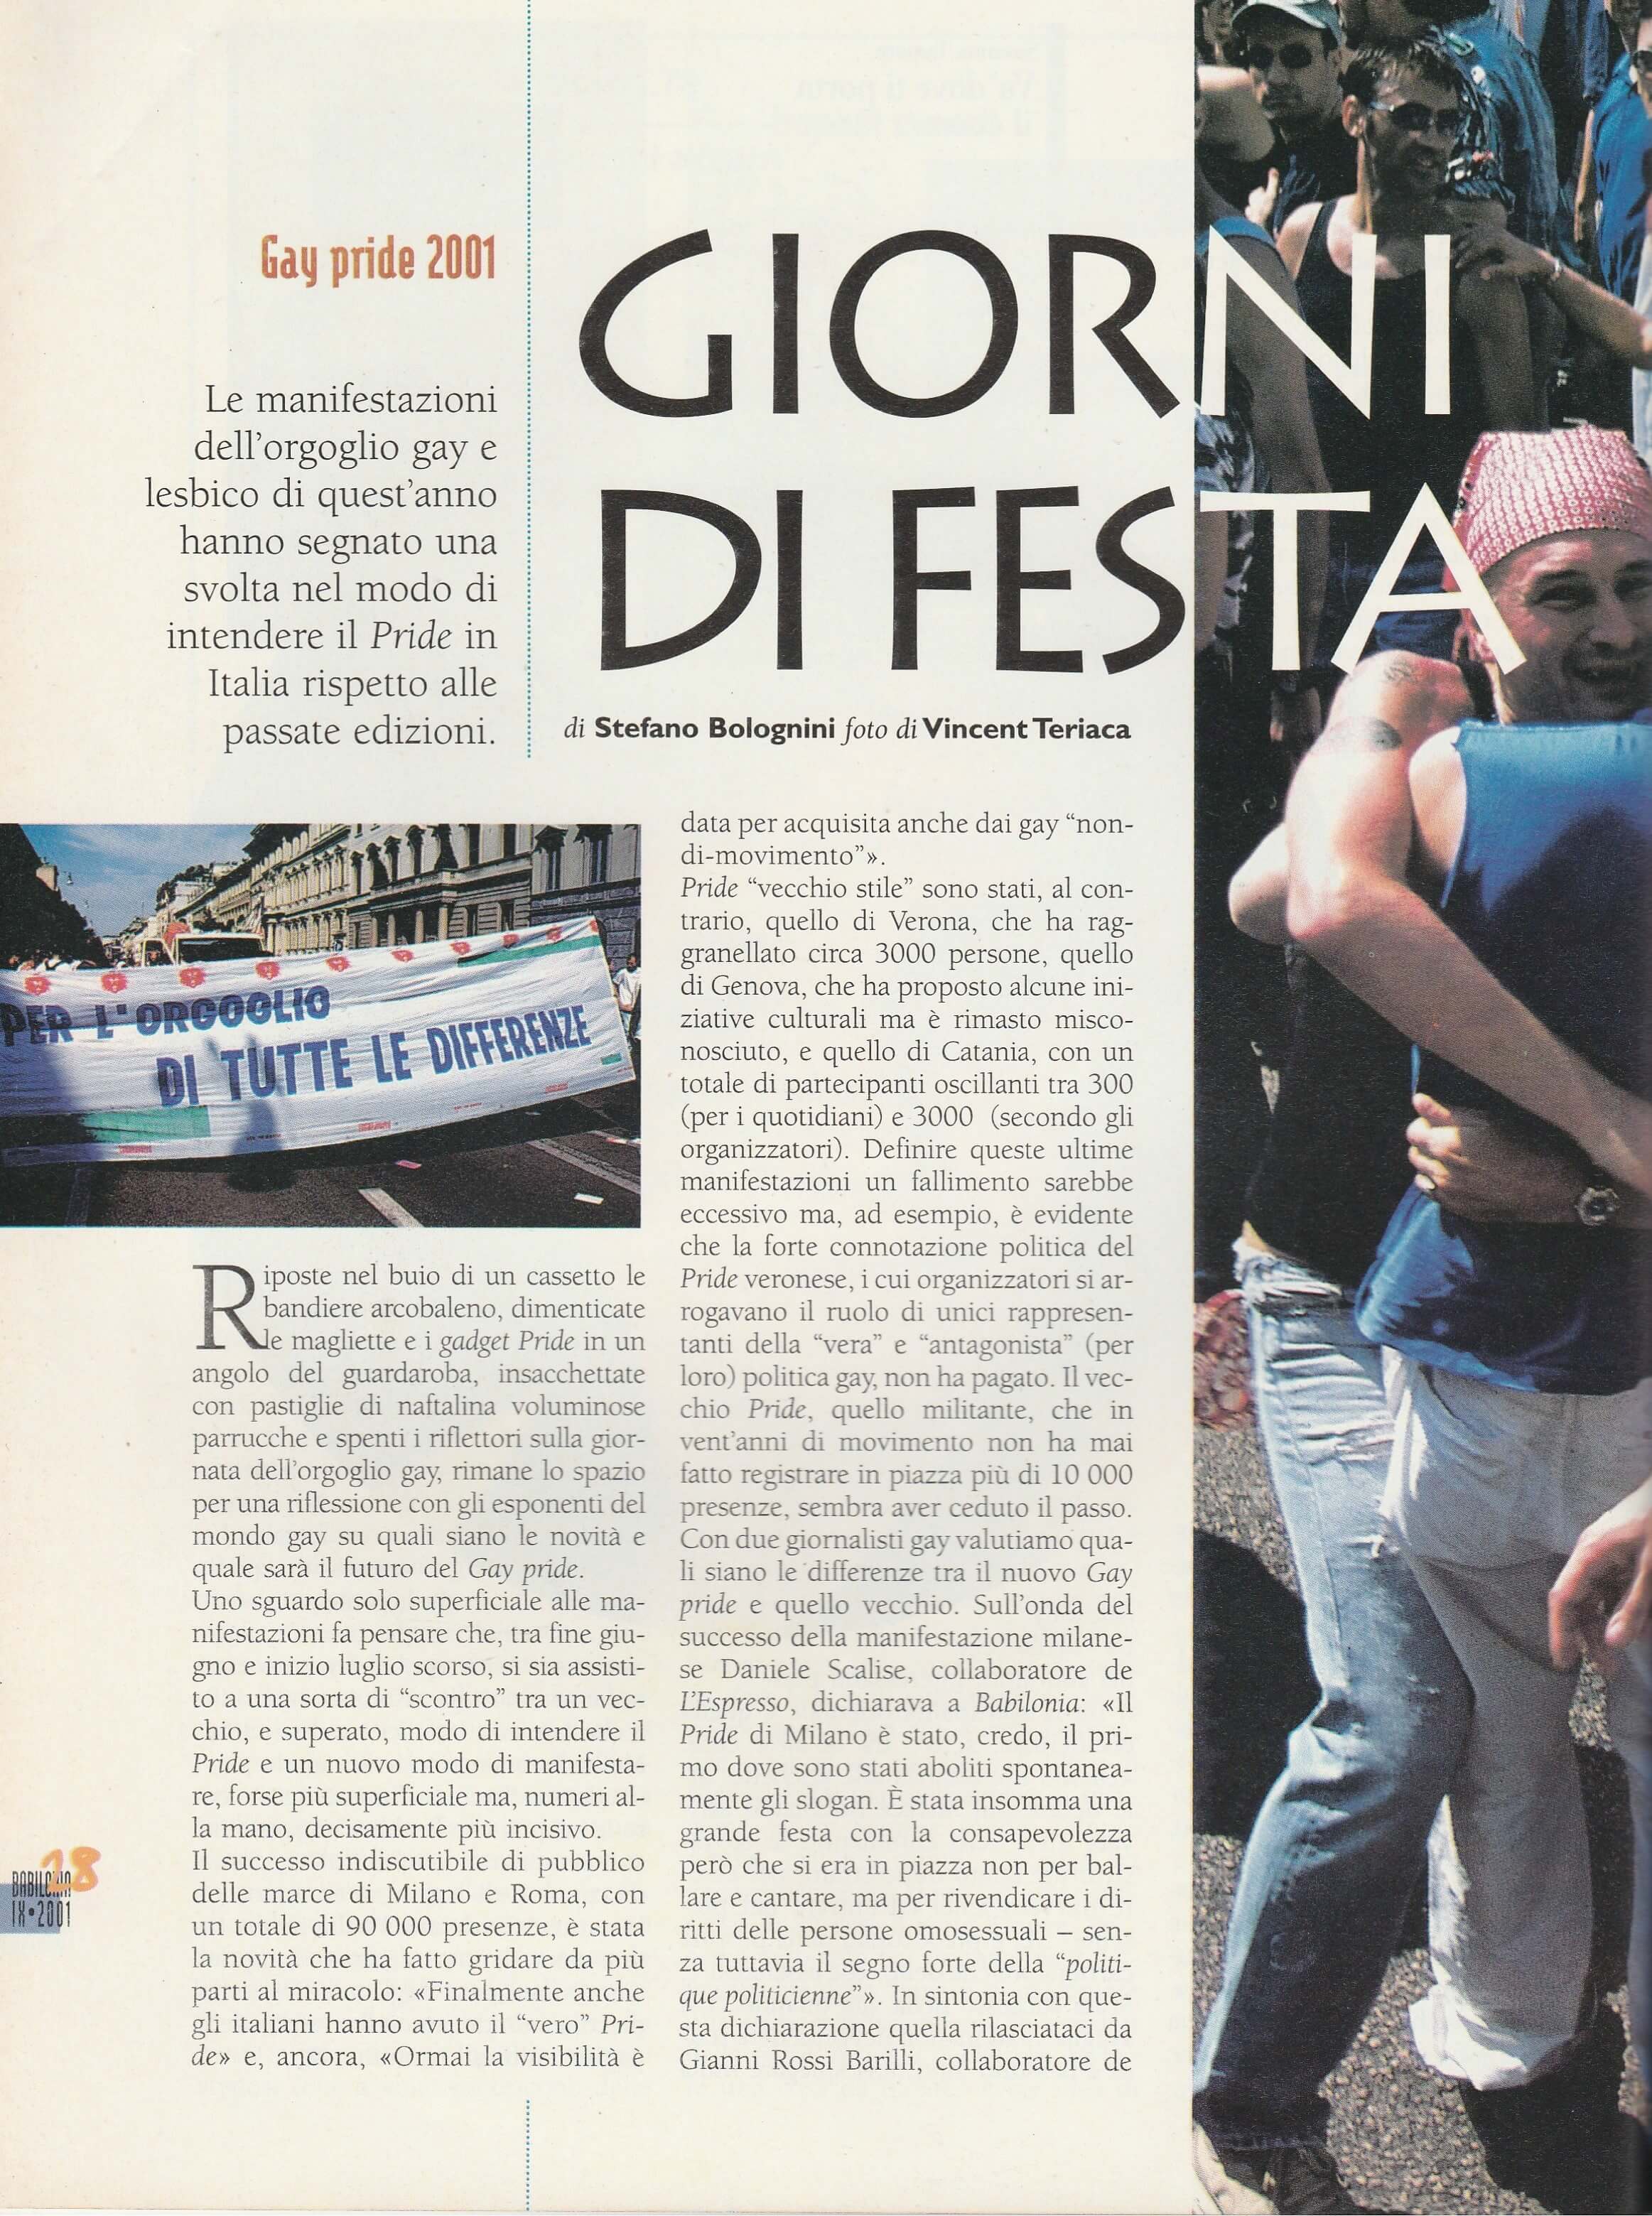 Un articolo da "Babilonia" del settembre 2001 sulle varie manifestazioni per il Gay Pride svoltesi in diverse città italiane nel giugno dello stesso anno.